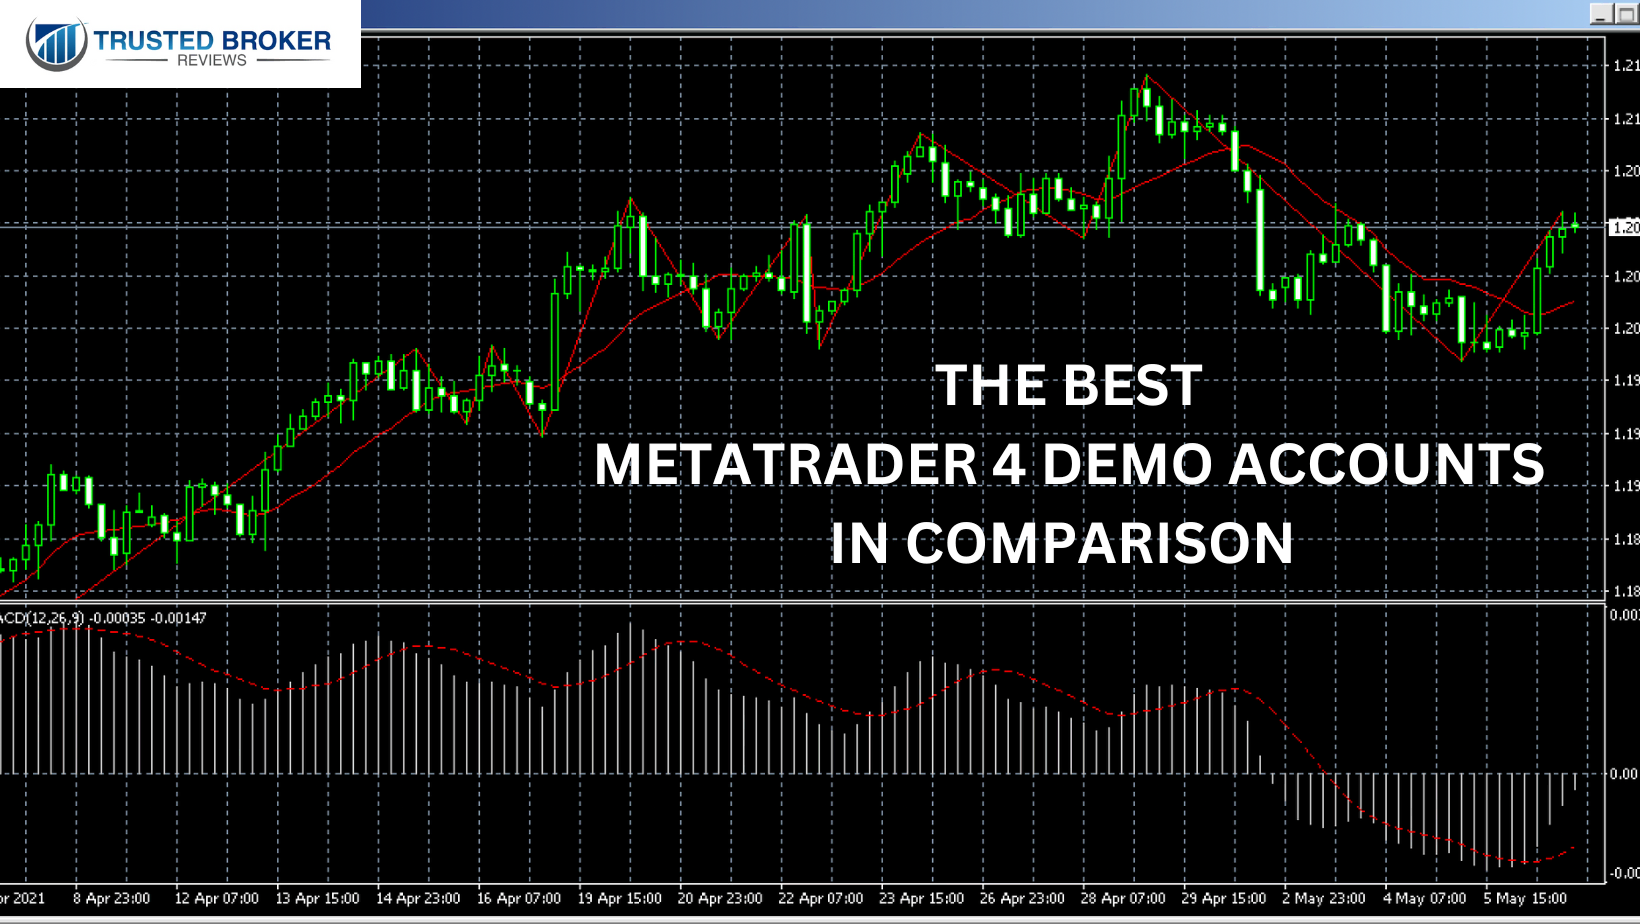 Tüccarlar için karşılaştırmalı olarak en iyi MetaTrader 4 demo hesabı